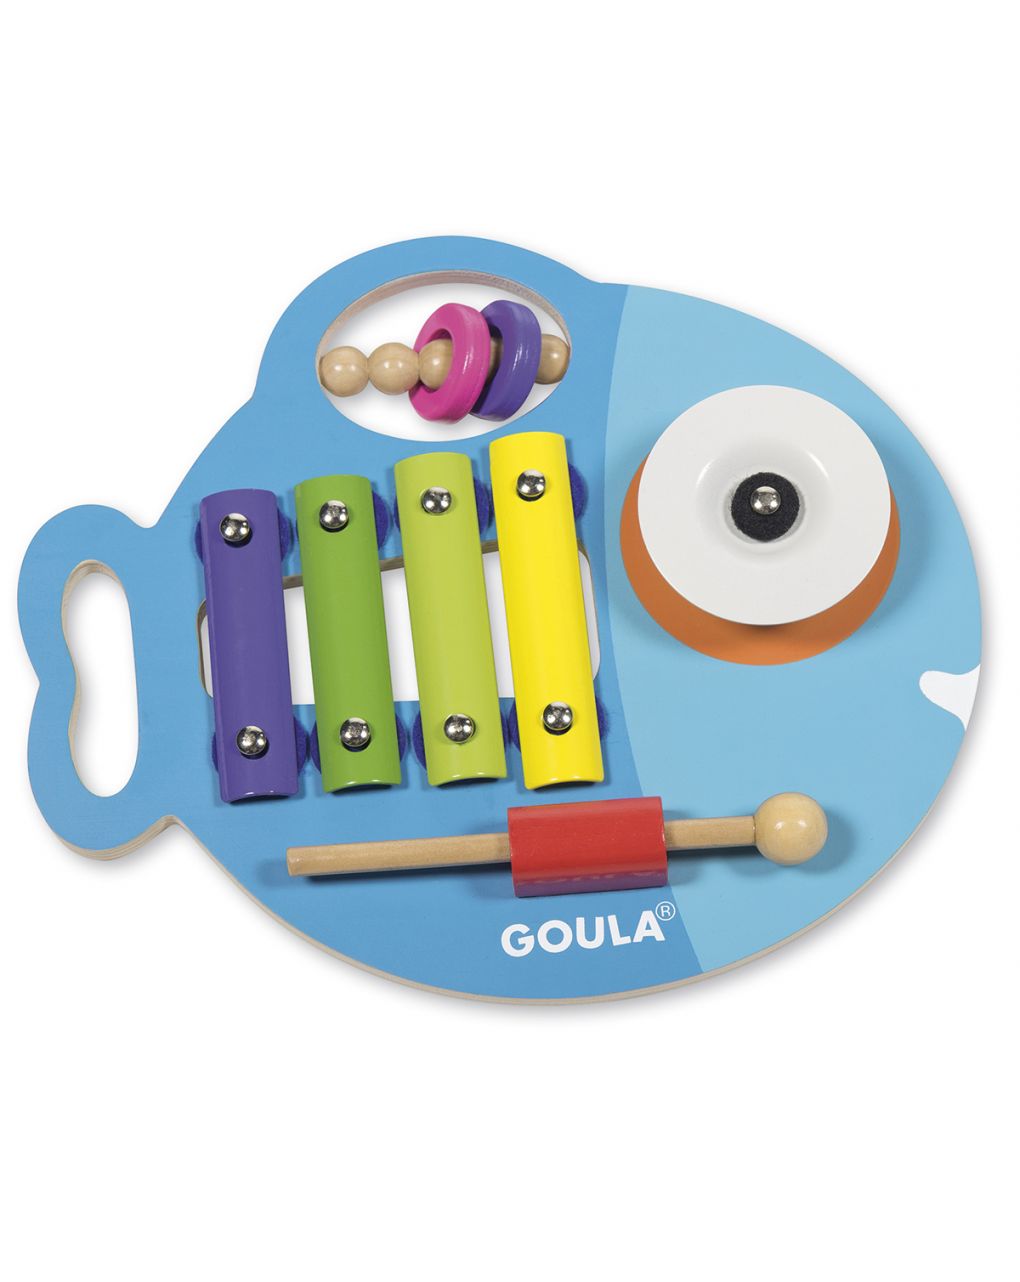 Goula - glupi musicale 3 in 1 - Goula